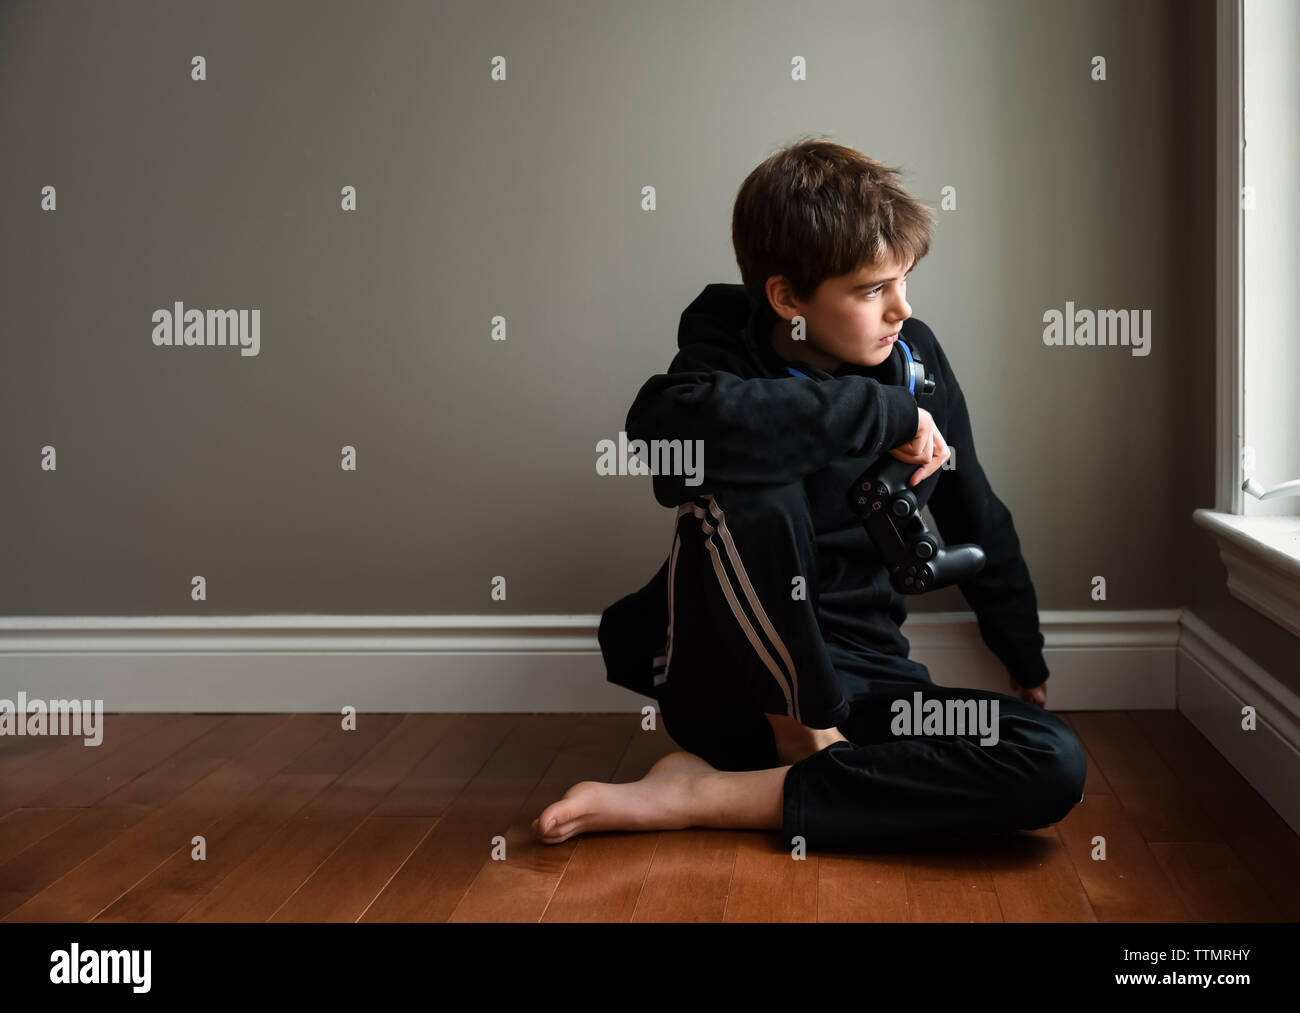 Boy sitting on floor looking out window avec contrôleur de jeu vidéo. Banque D'Images